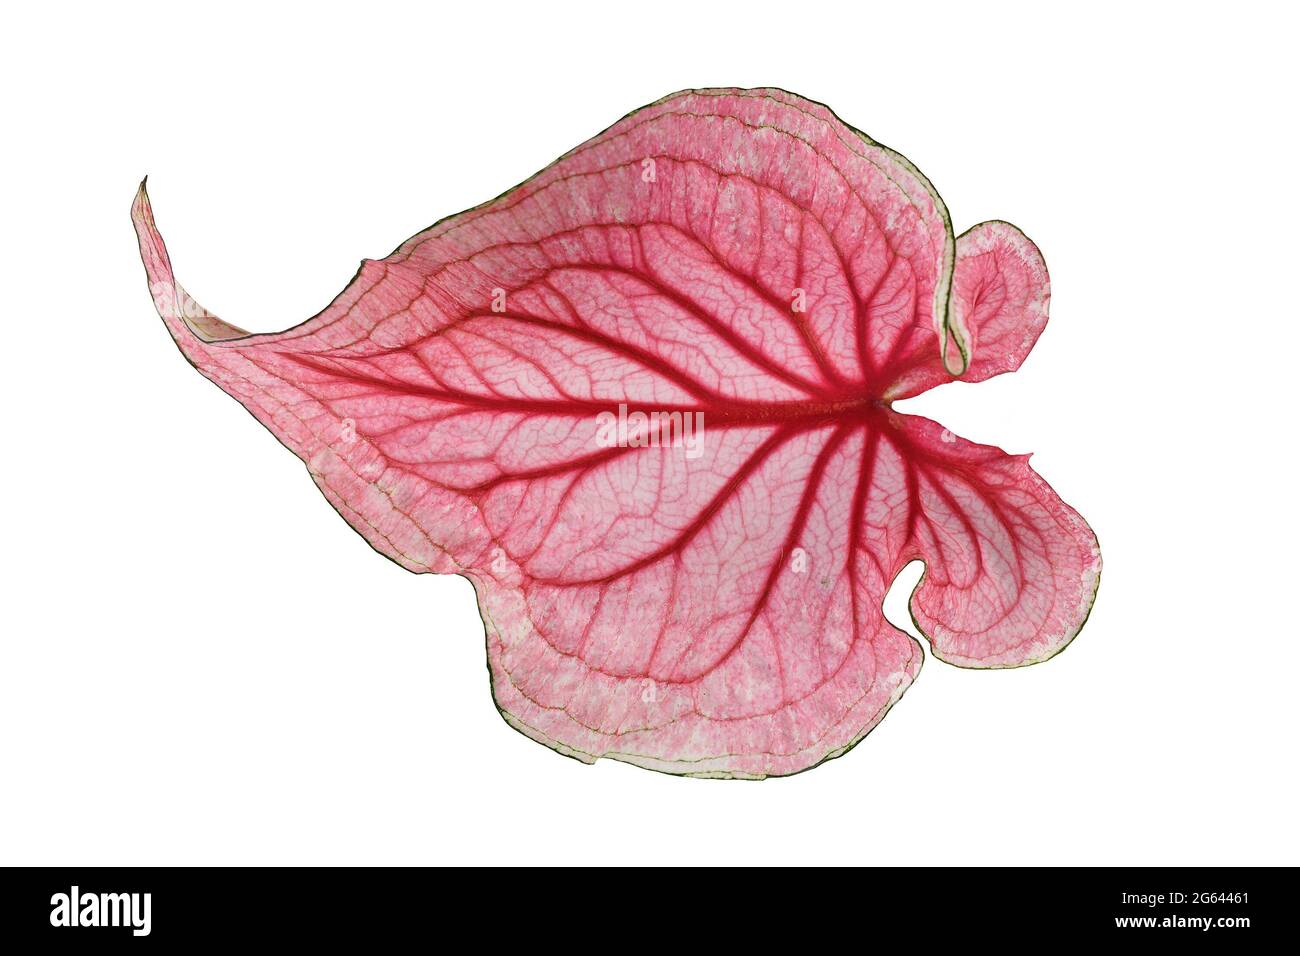 Feuille unique de plante rose tropicale 'Caladium Florida Sweetheart' isolée sur fond blanc Banque D'Images